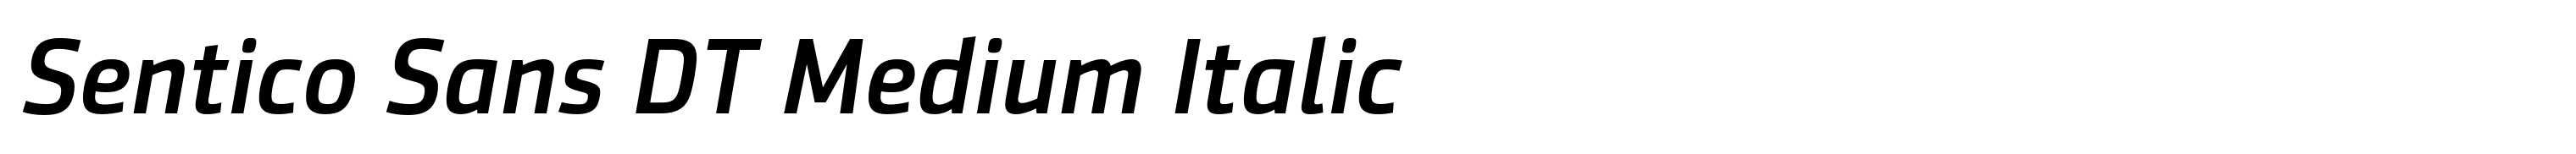 Sentico Sans DT Medium Italic